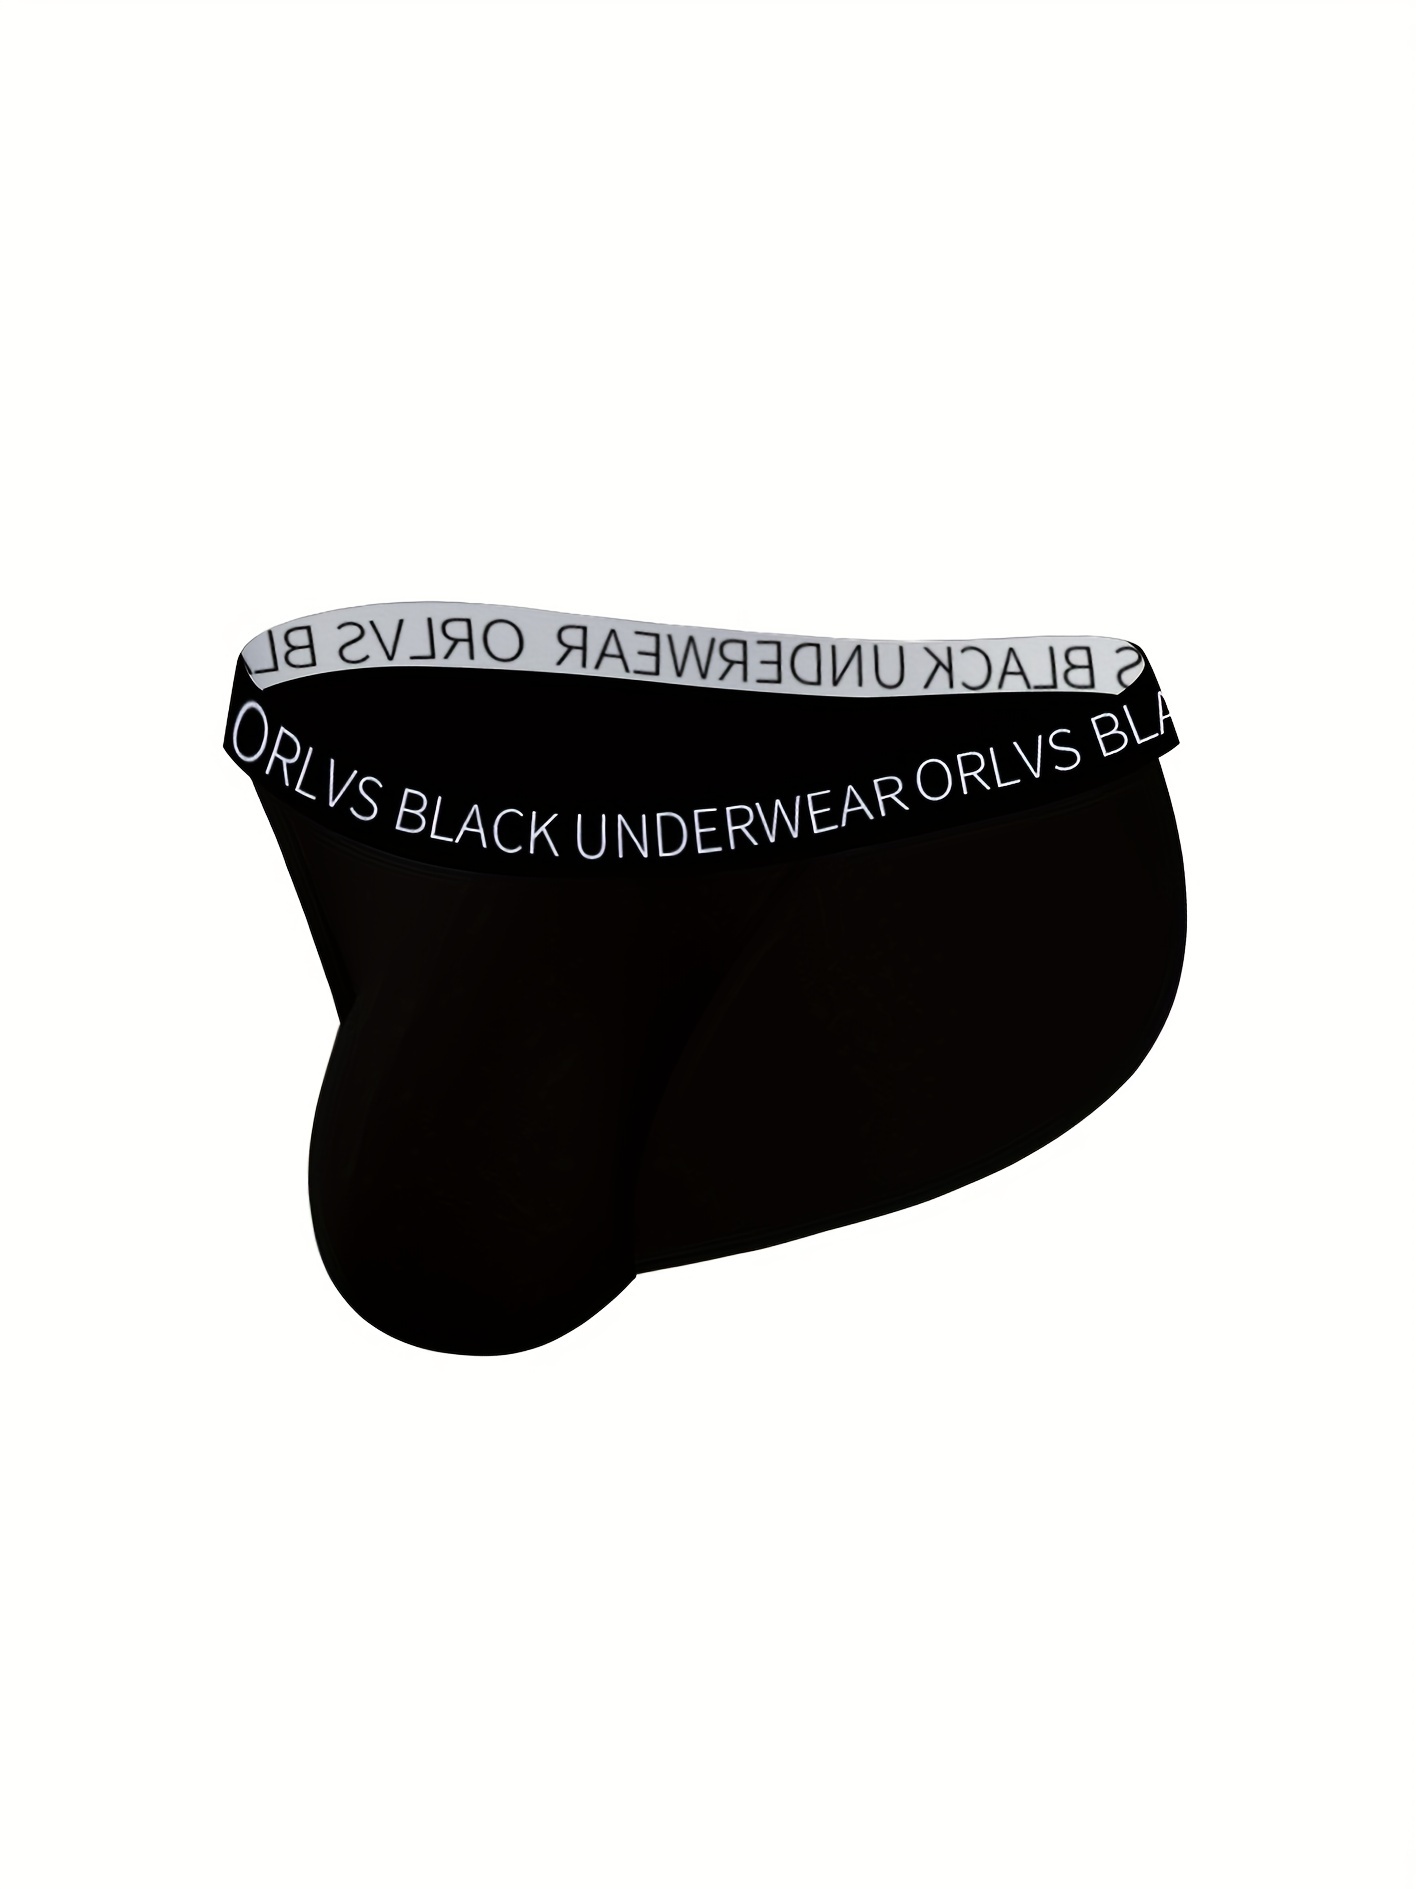 Calvin Klein CK men black microfiber G-string thong underwear size S M XL